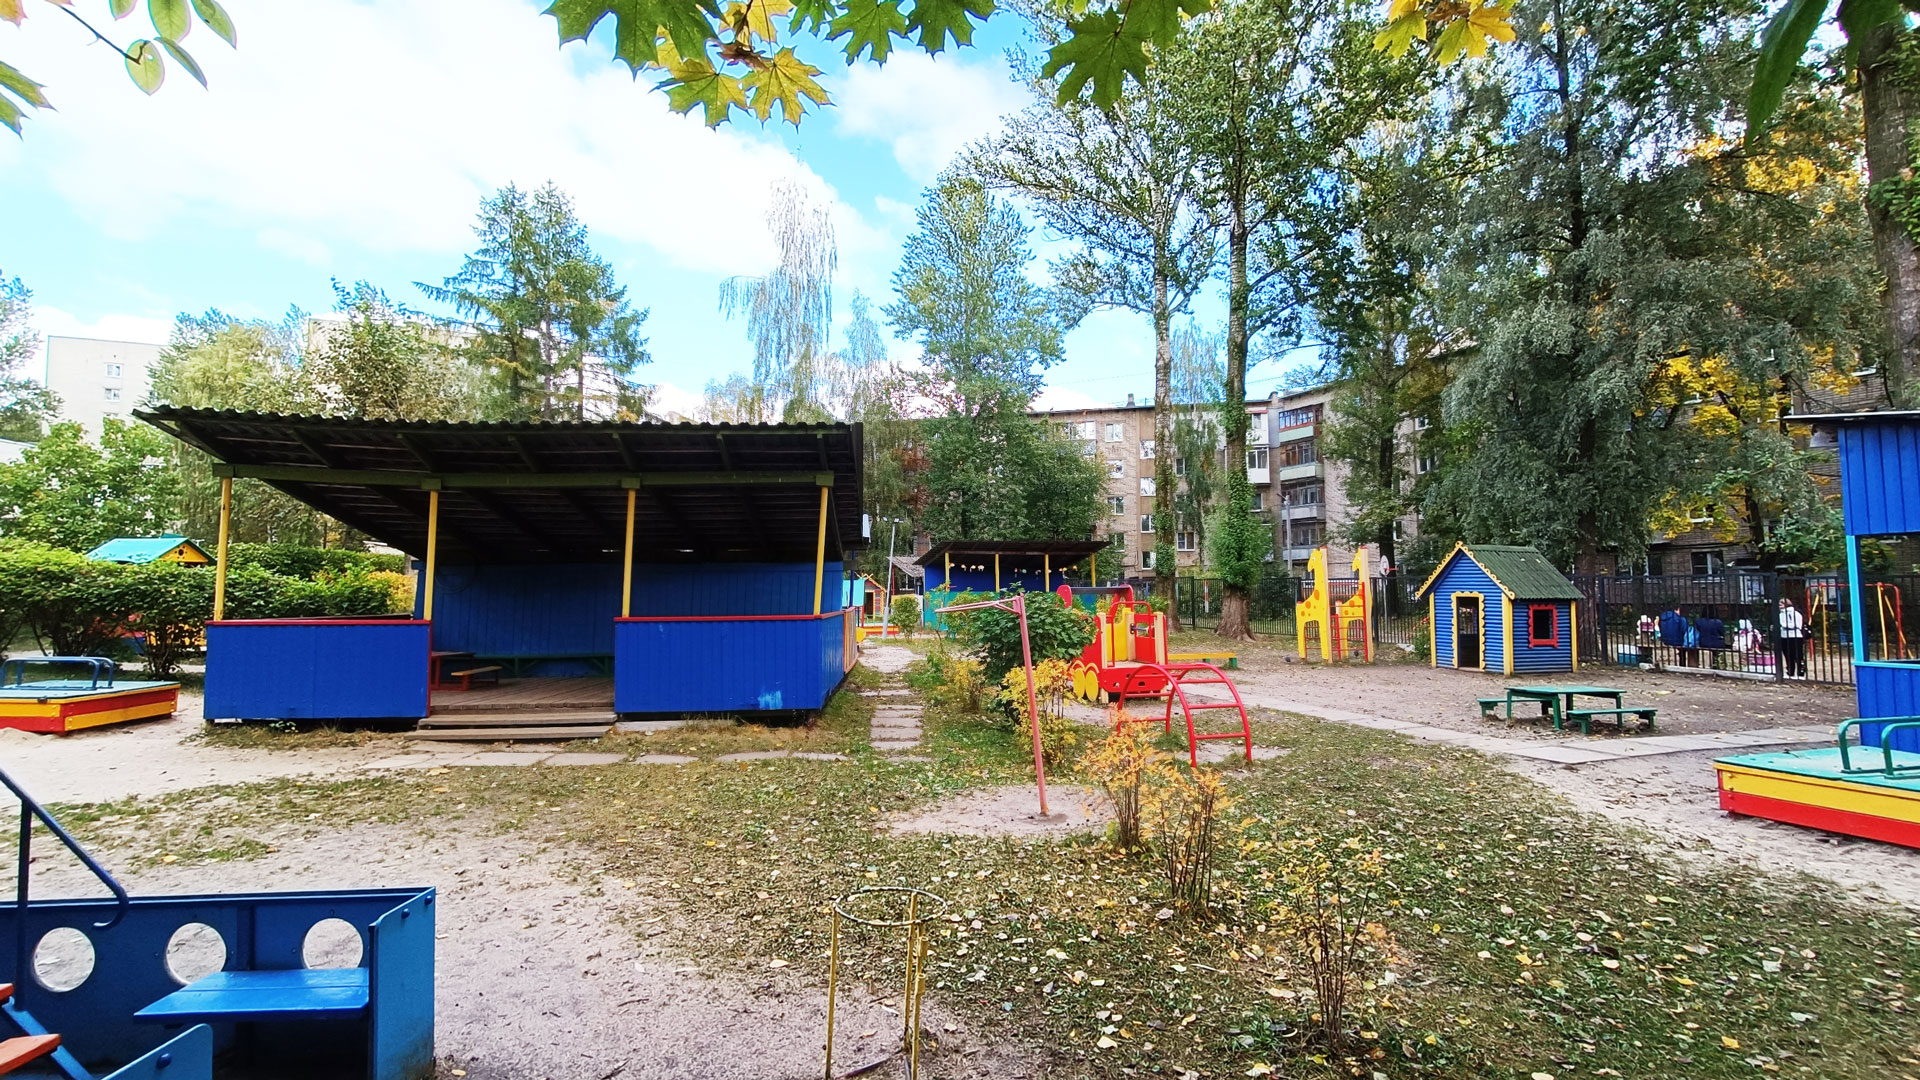 Детский сад 232 Ярославль: беседки, машины, домик, скамейки.